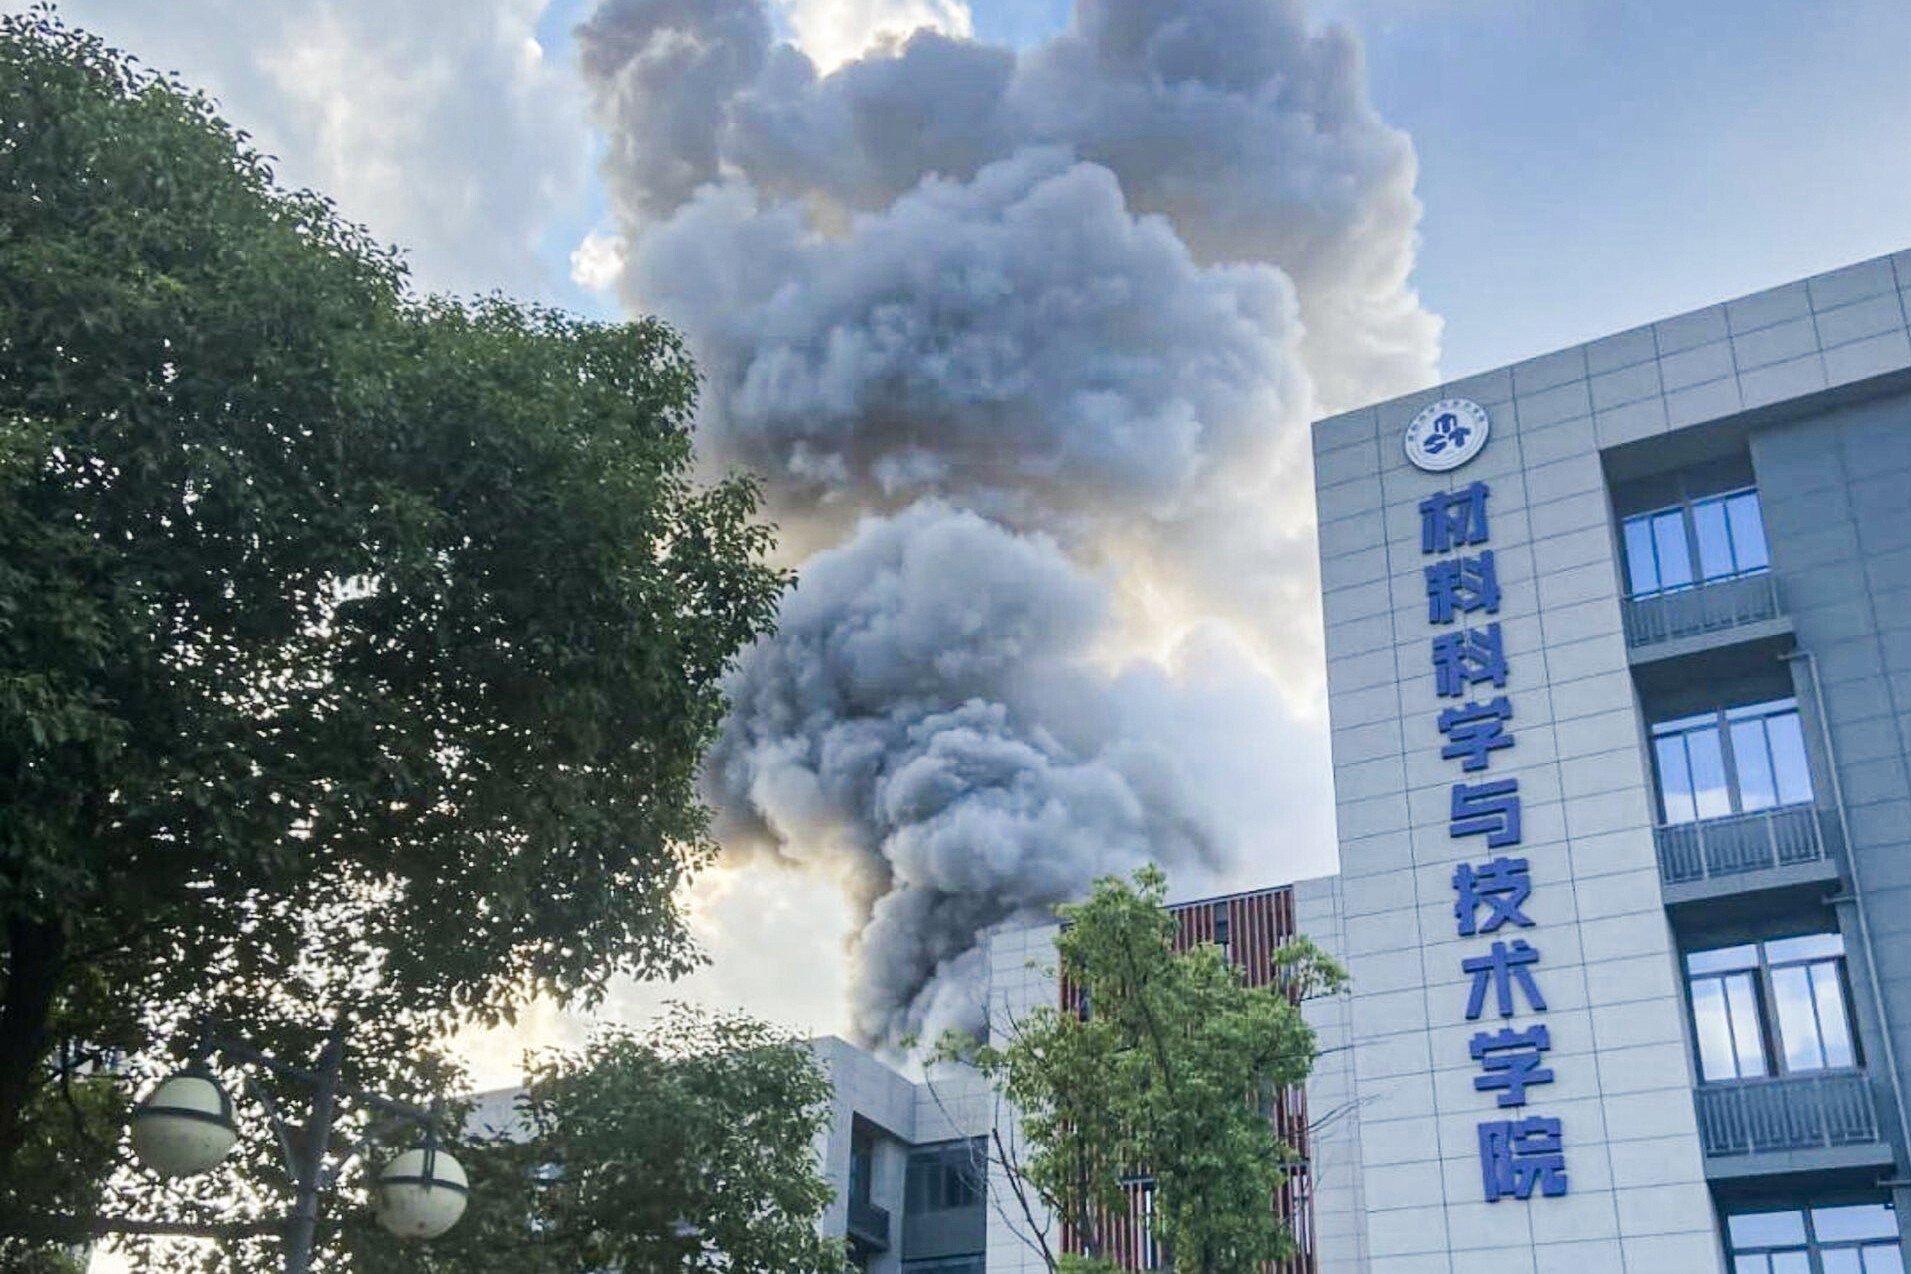 Shpërthim në një laborator në një universitet në Kinë, humbin jetën 2 persona plagosen 9 të tjerë